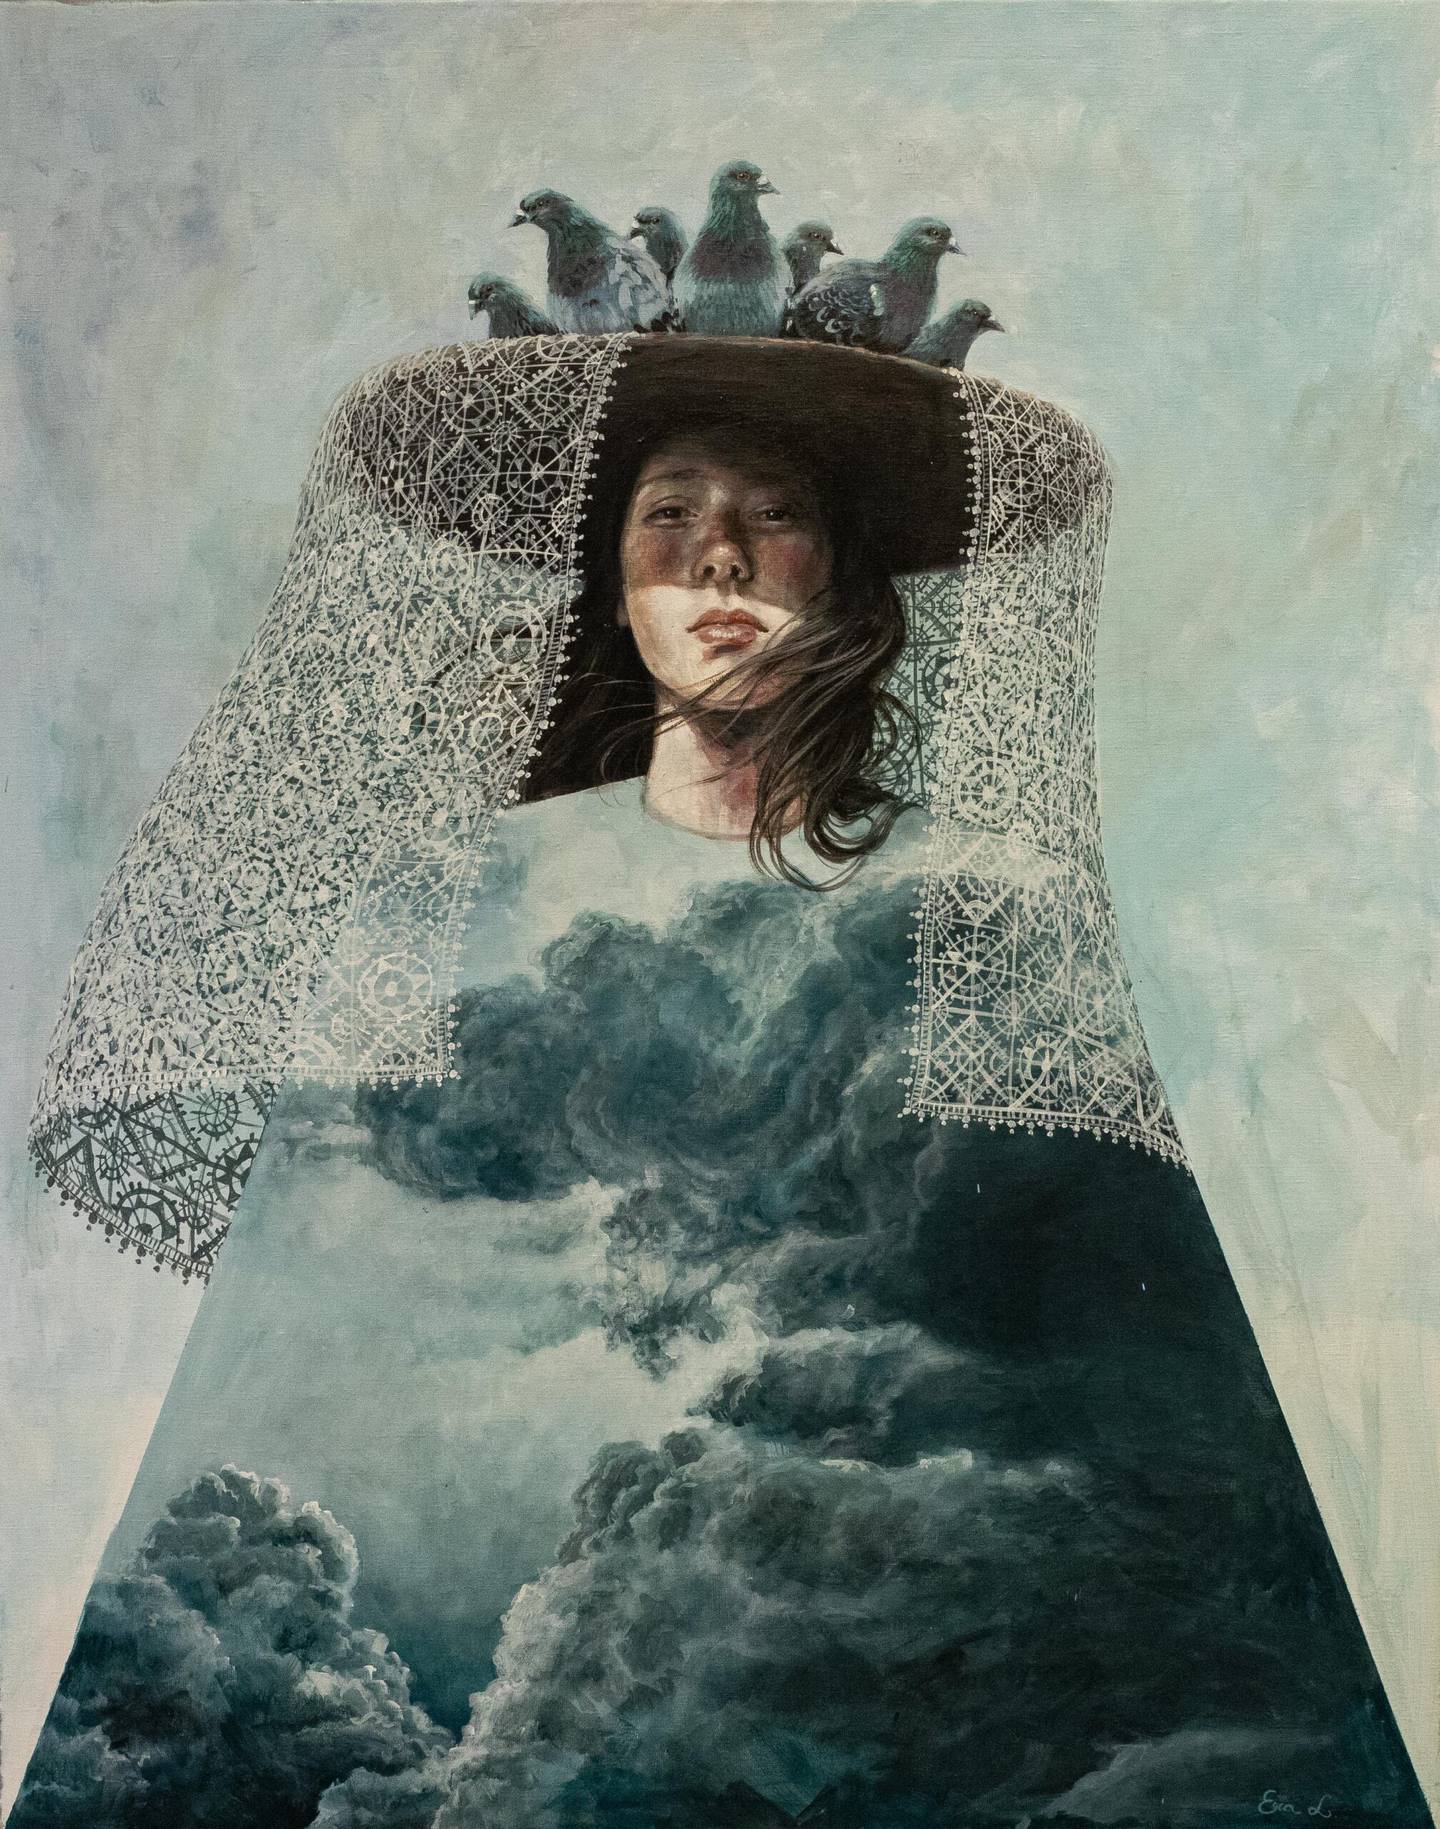 Era Leisner innlemmer naturelementer i sine smått surrealistiske malerier. Her «Stormy clouds».